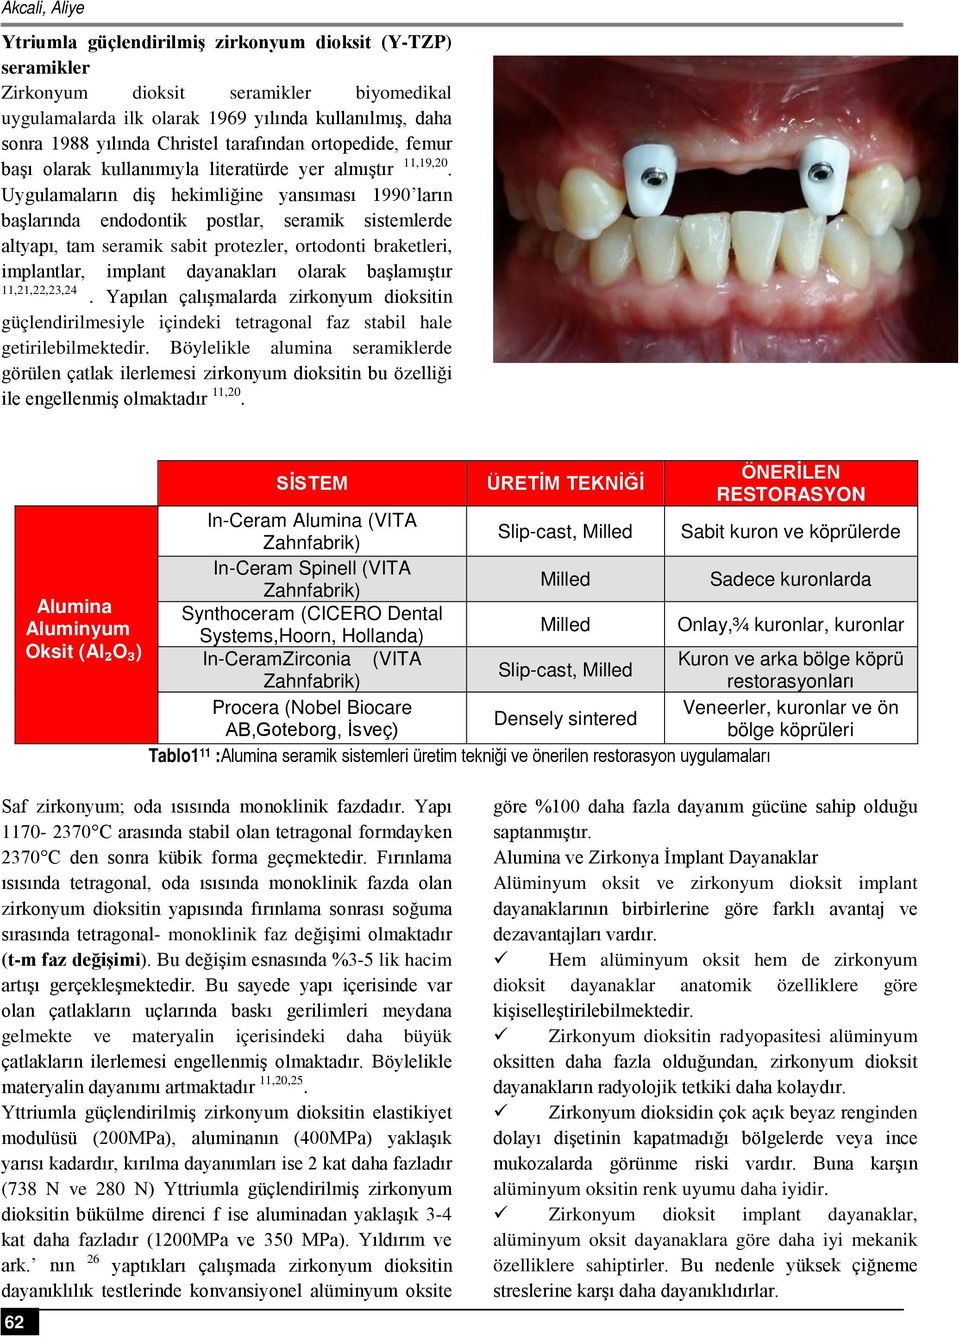 Uygulamaların diş hekimliğine yansıması 1990 ların başlarında endodontik postlar, seramik sistemlerde altyapı, tam seramik sabit protezler, ortodonti braketleri, implantlar, implant dayanakları